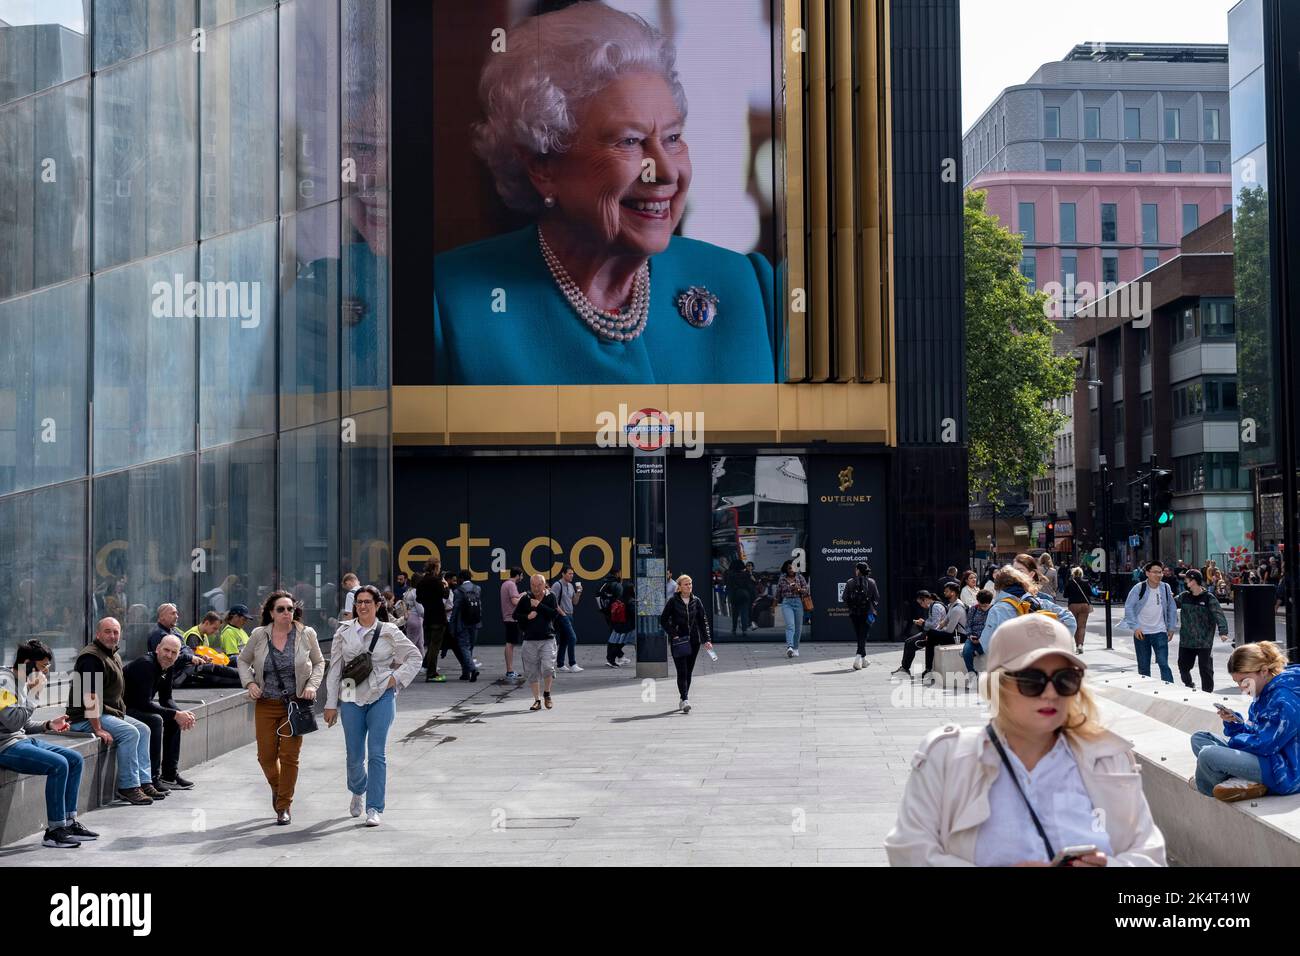 La gente interactúa con una imagen de la Reina, exhibida en pantallas digitales a gran escala en el edificio Outernet el día siguiente a la muerte de la Reina Isabel II el 9th de septiembre de 2022 en Londres, Reino Unido. La Reina, que tenía 96 años, reinó como monarca del Reino Unido y de la Commonwealth durante 70 años. Foto de stock